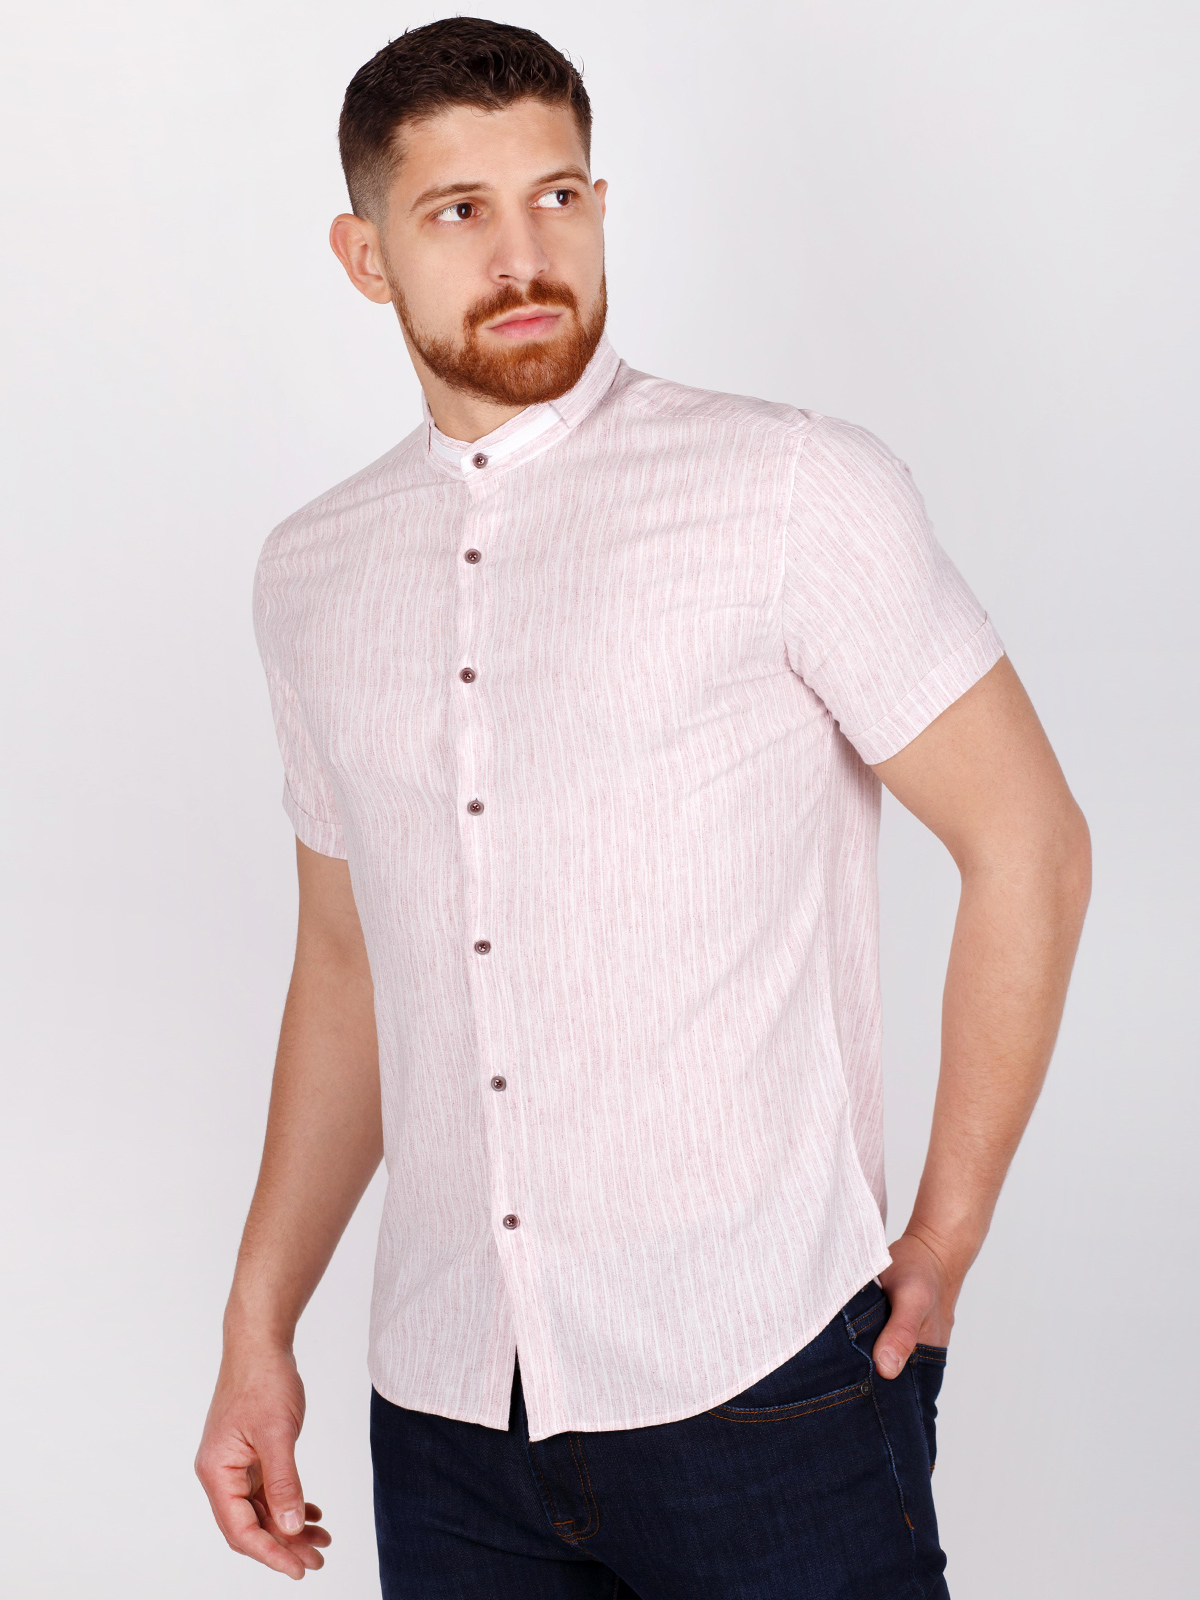 Απαλό ροζ και λευκό ριγέ πουκάμισο - 80223 € 16.31 img2